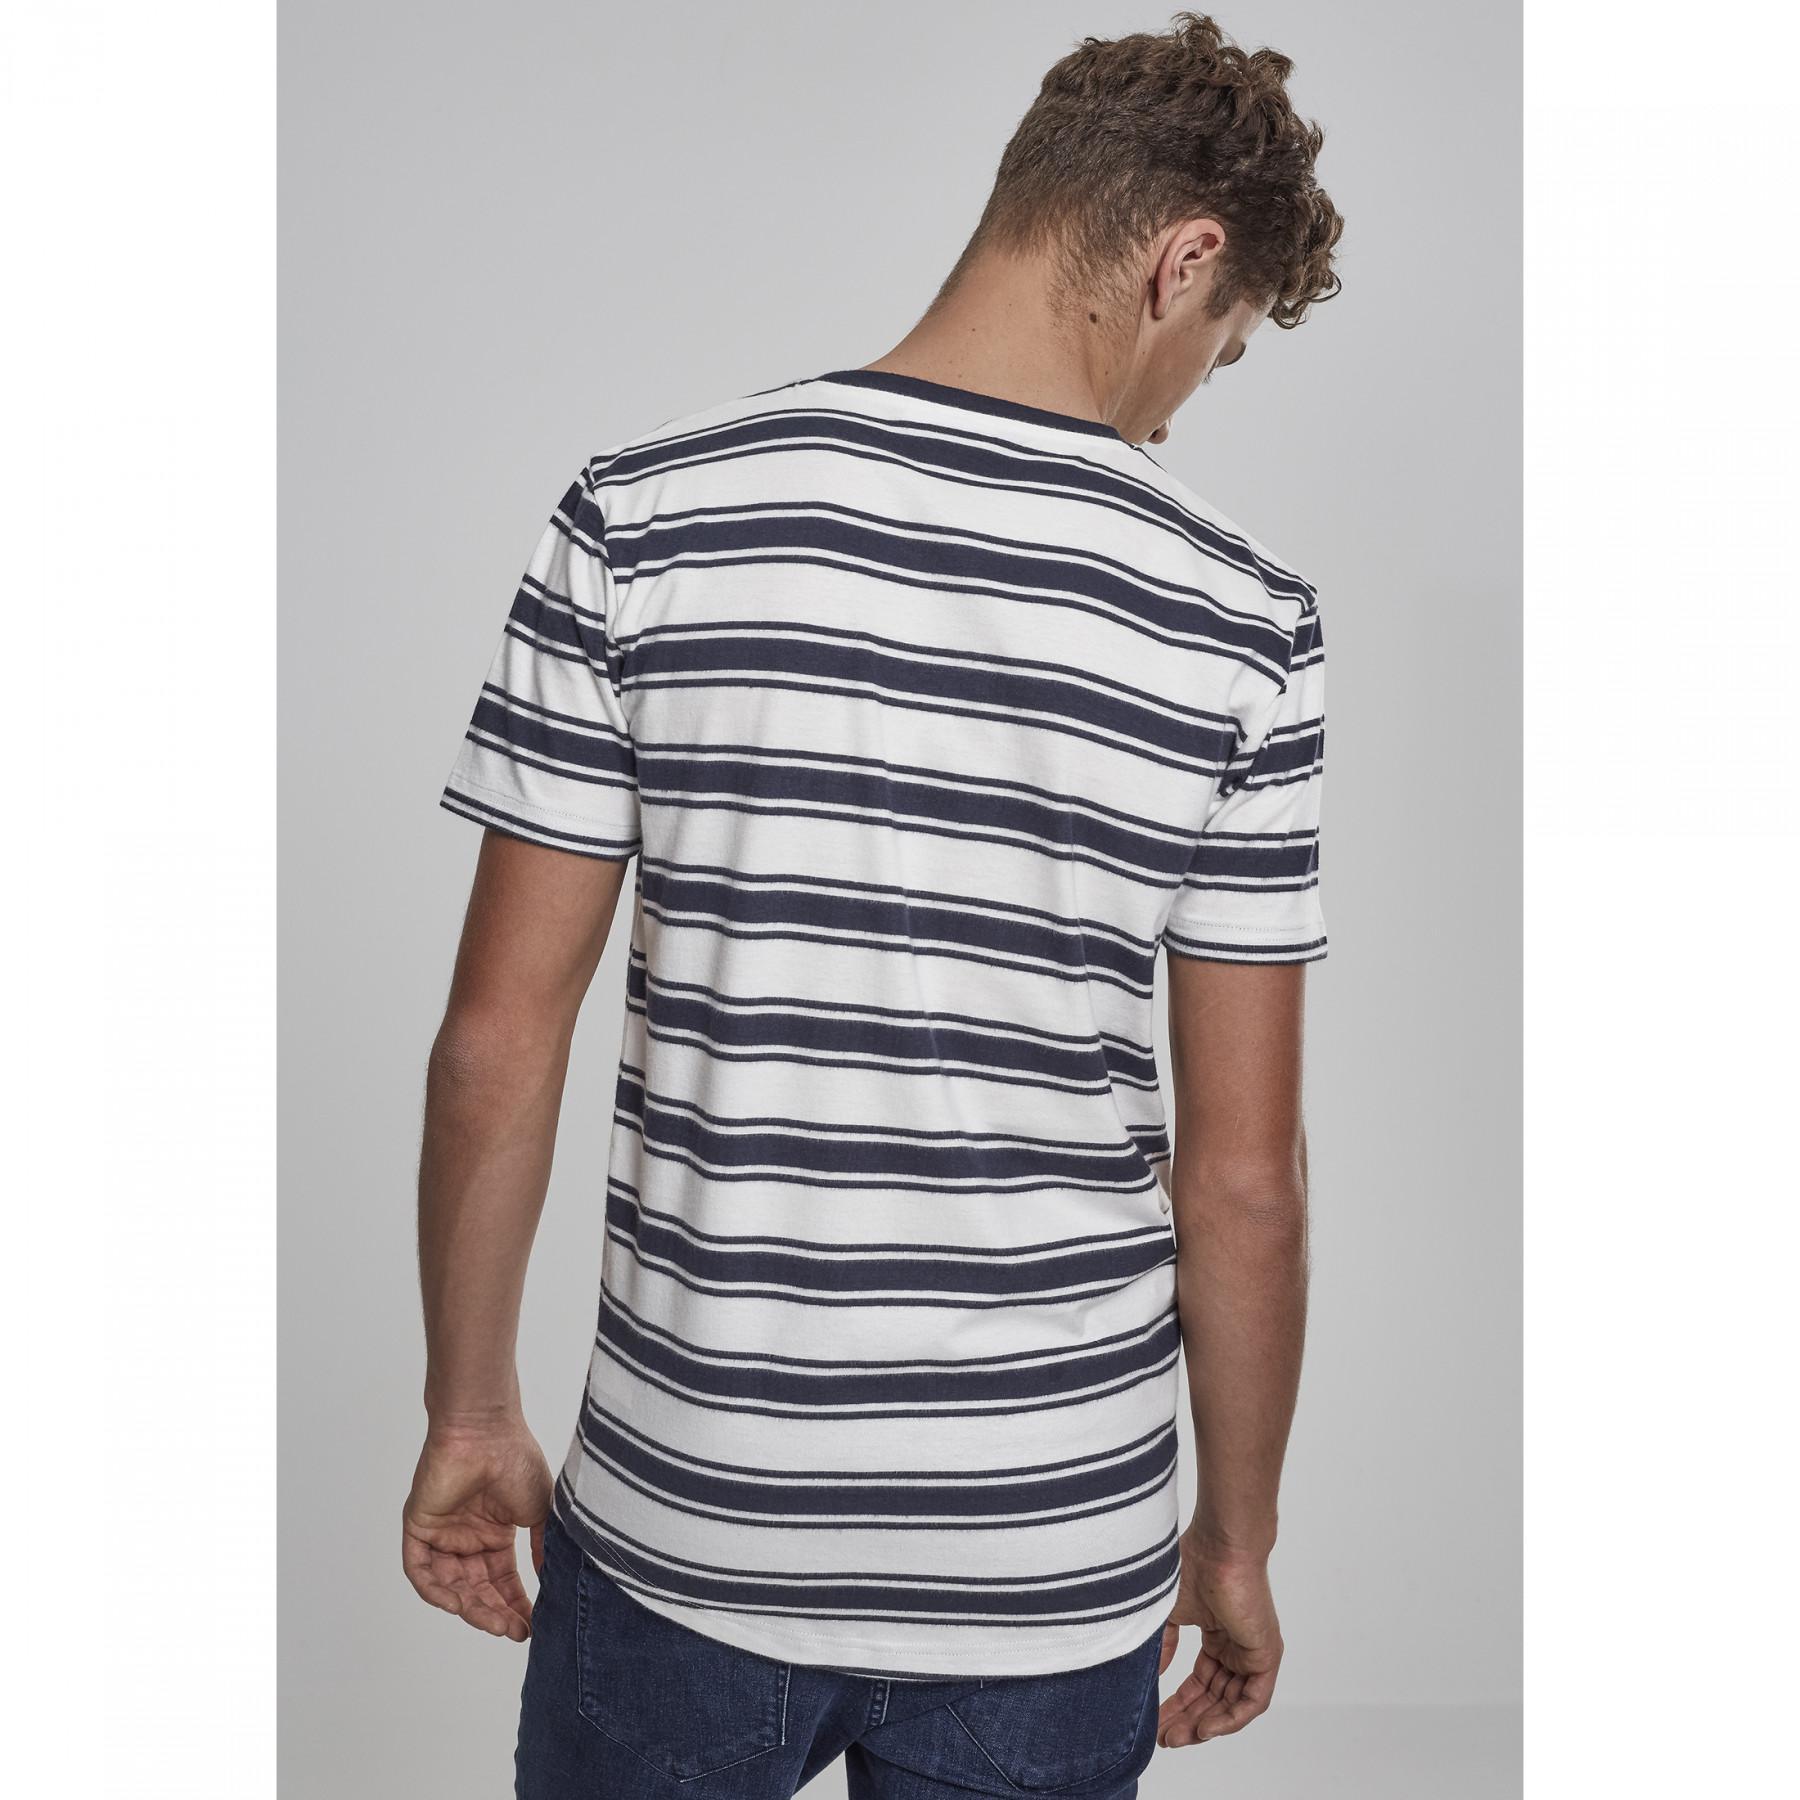 T-shirt urban classic double stripe long shaped